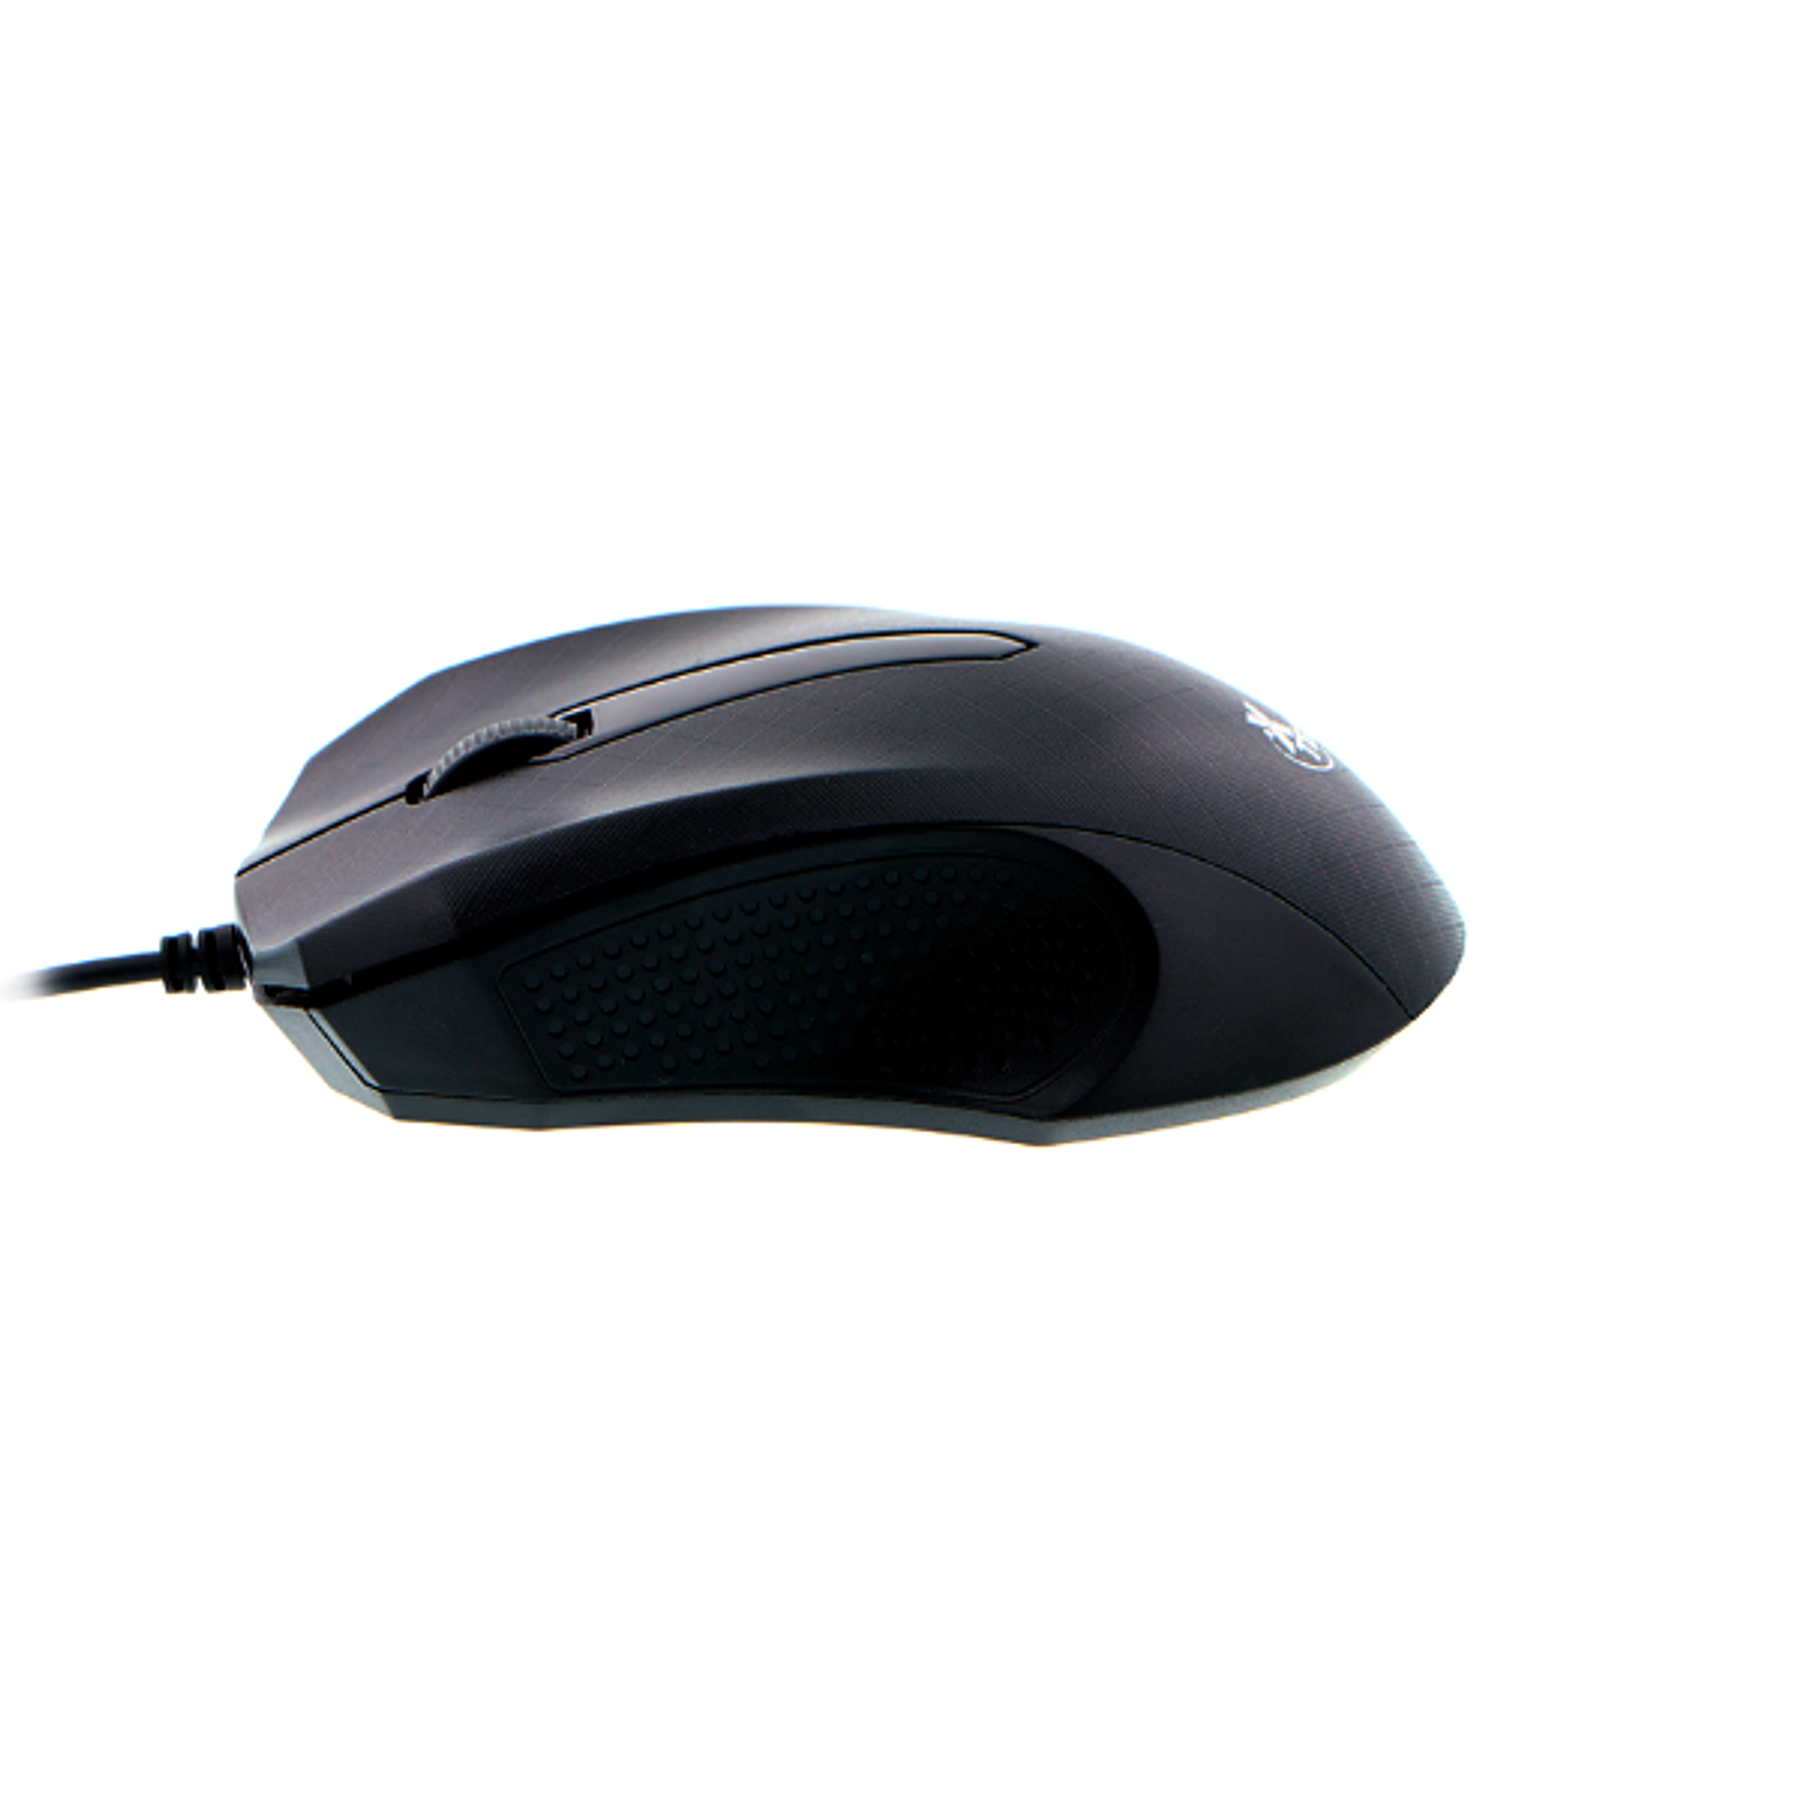 Xtech Mouse Optico con Cable